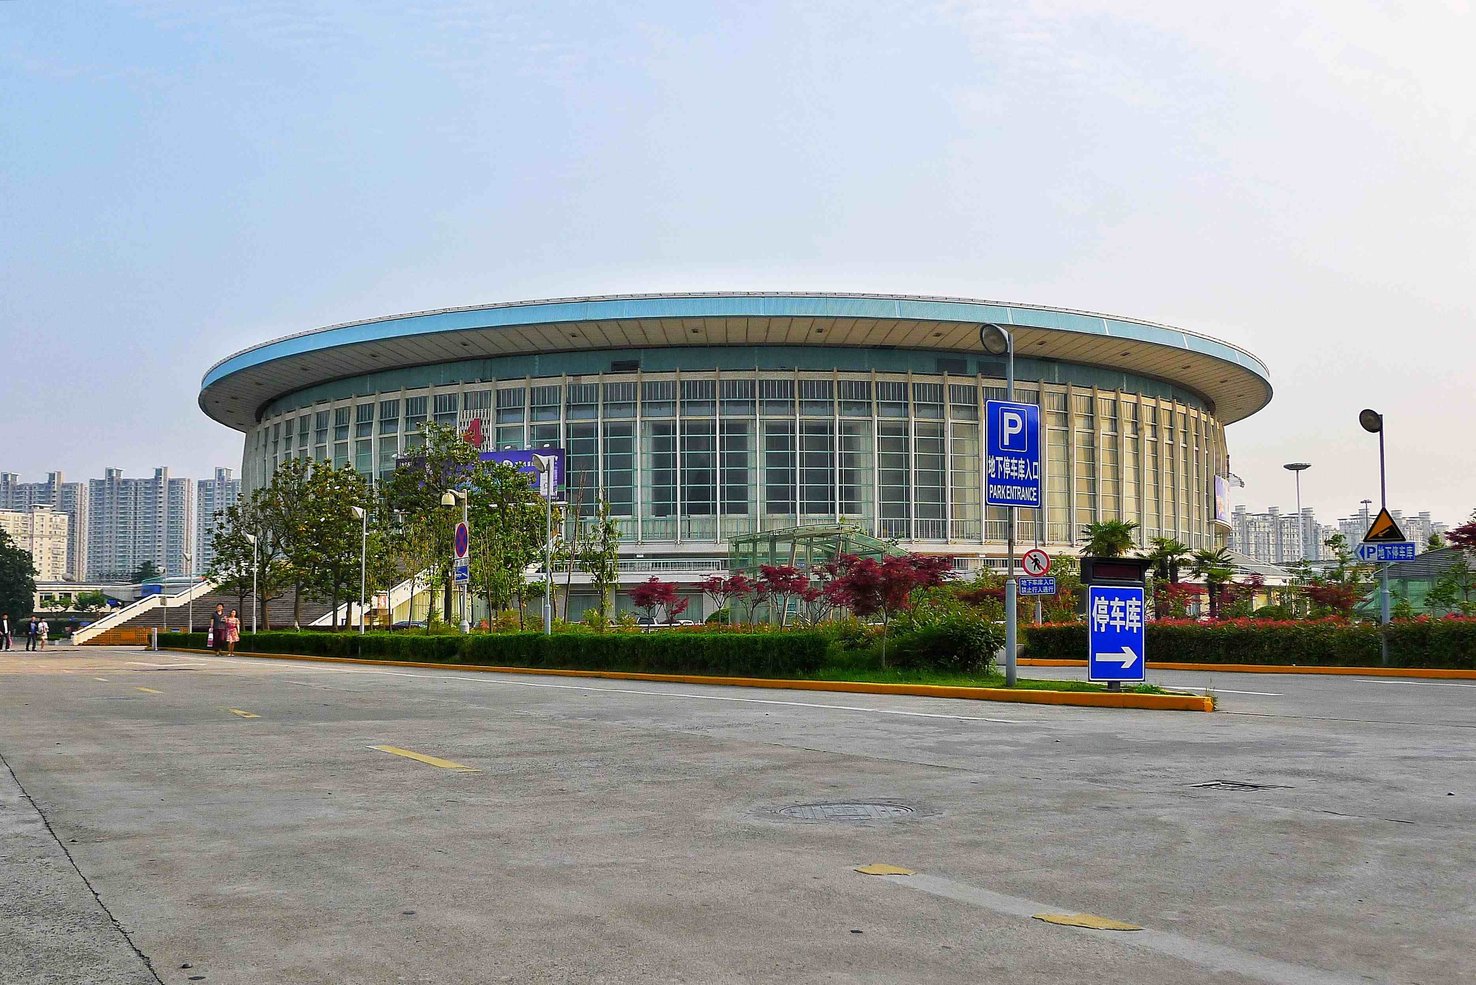 上海体育馆是国内大型的体育馆之一,1975年建成使用.